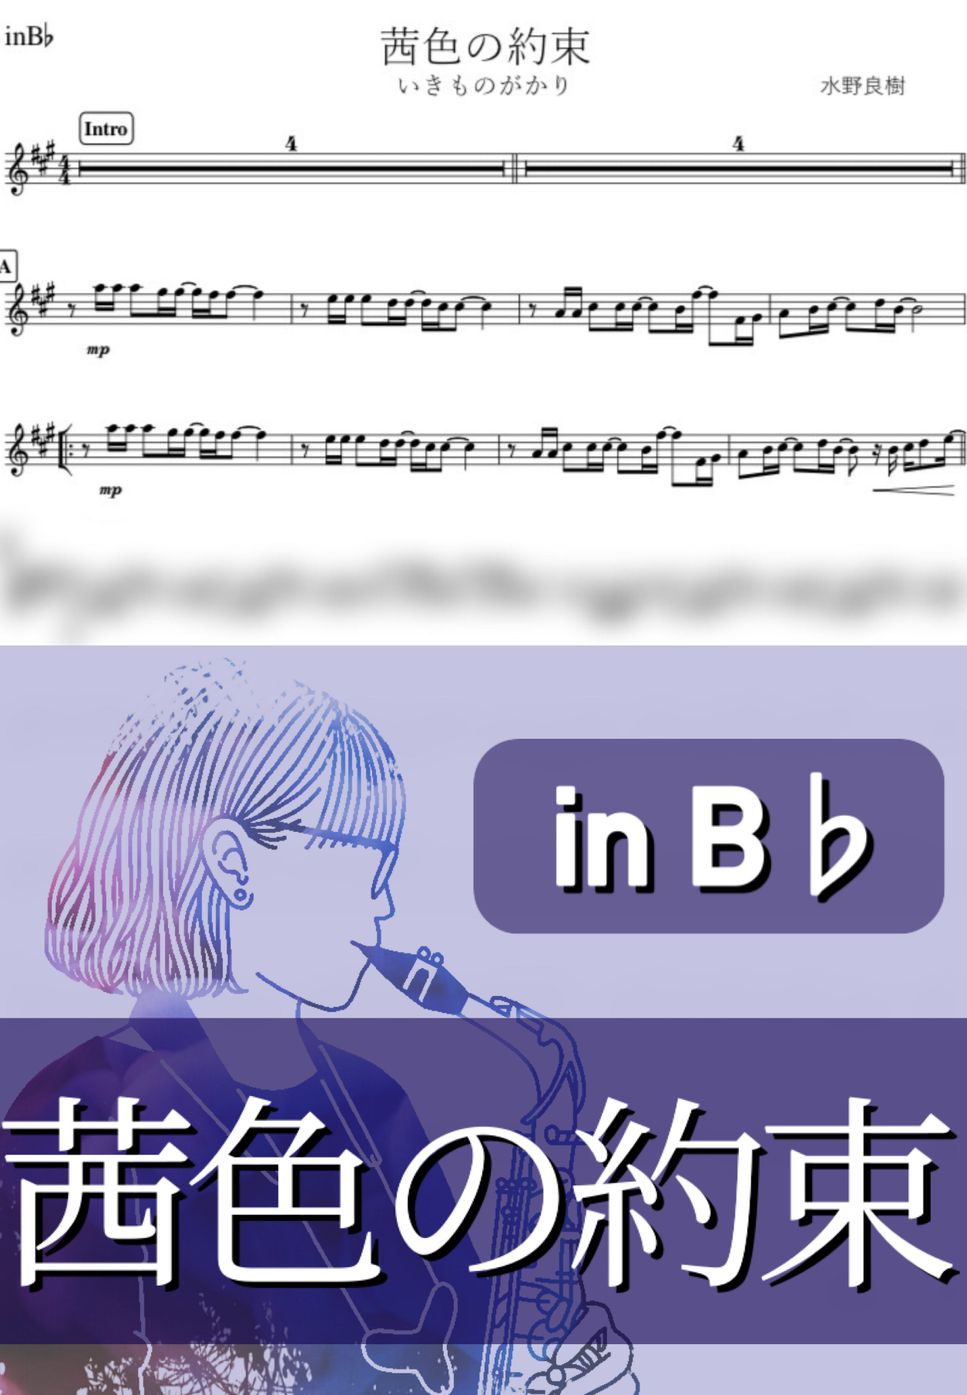 いきものがかり - 茜色の約束 (B♭) by kanamusic